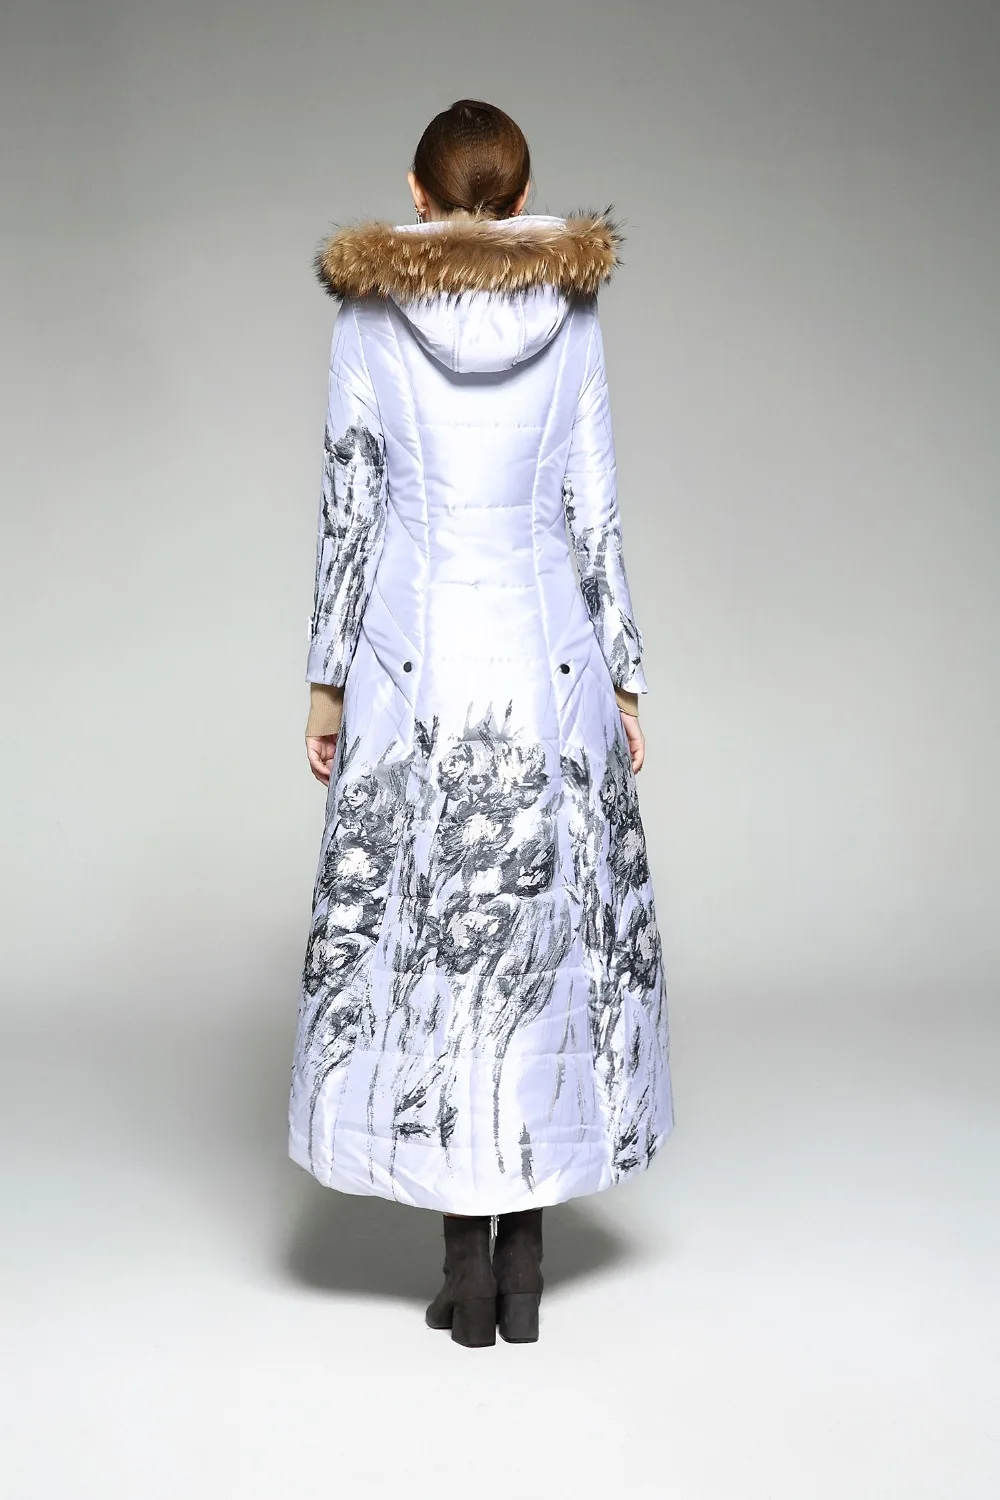 Xlong/Новая высококачественная женская зимняя куртка, парки с принтом, роскошный пуховик из натурального хлопка с меховым воротником, очень длинные пальто с хлопковой подкладкой